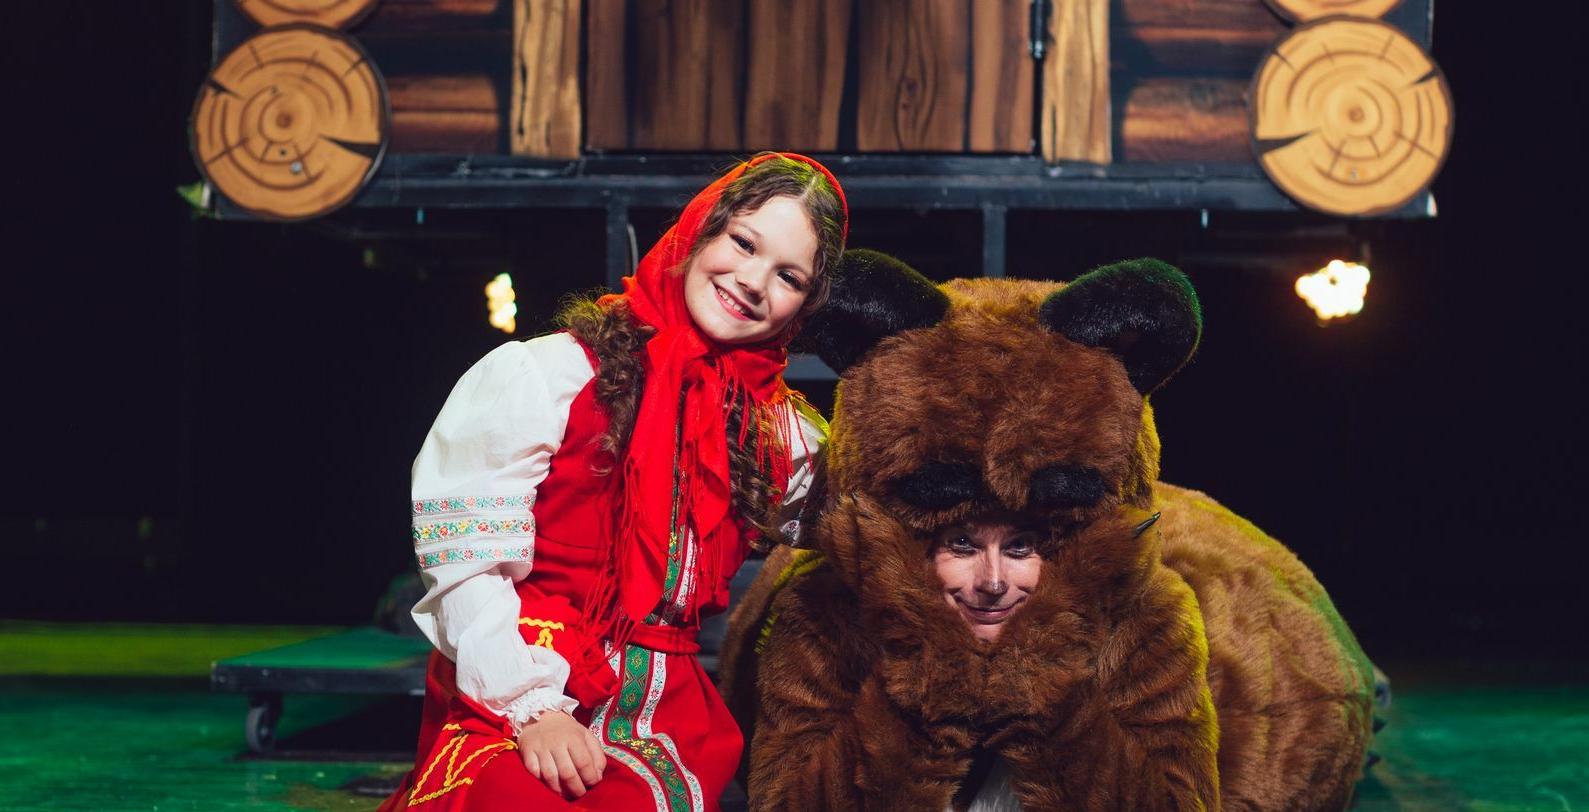 Цирковая сказка «Приключения Маши и Медведя» в ДК «Зодчие» со скидкой 30%